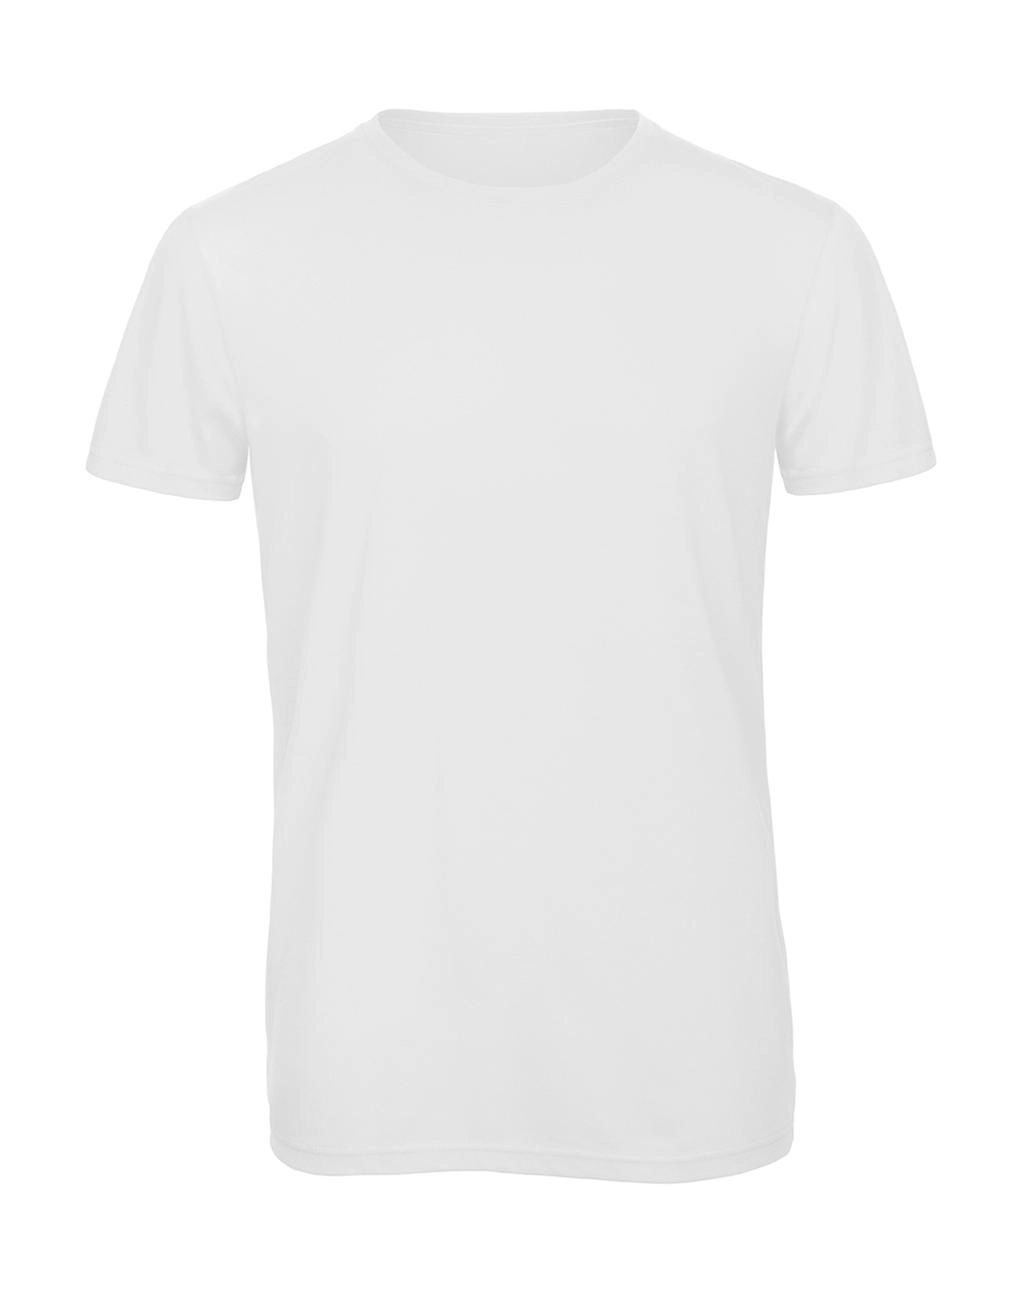 Triblend/men T-Shirt zum Besticken und Bedrucken in der Farbe White mit Ihren Logo, Schriftzug oder Motiv.